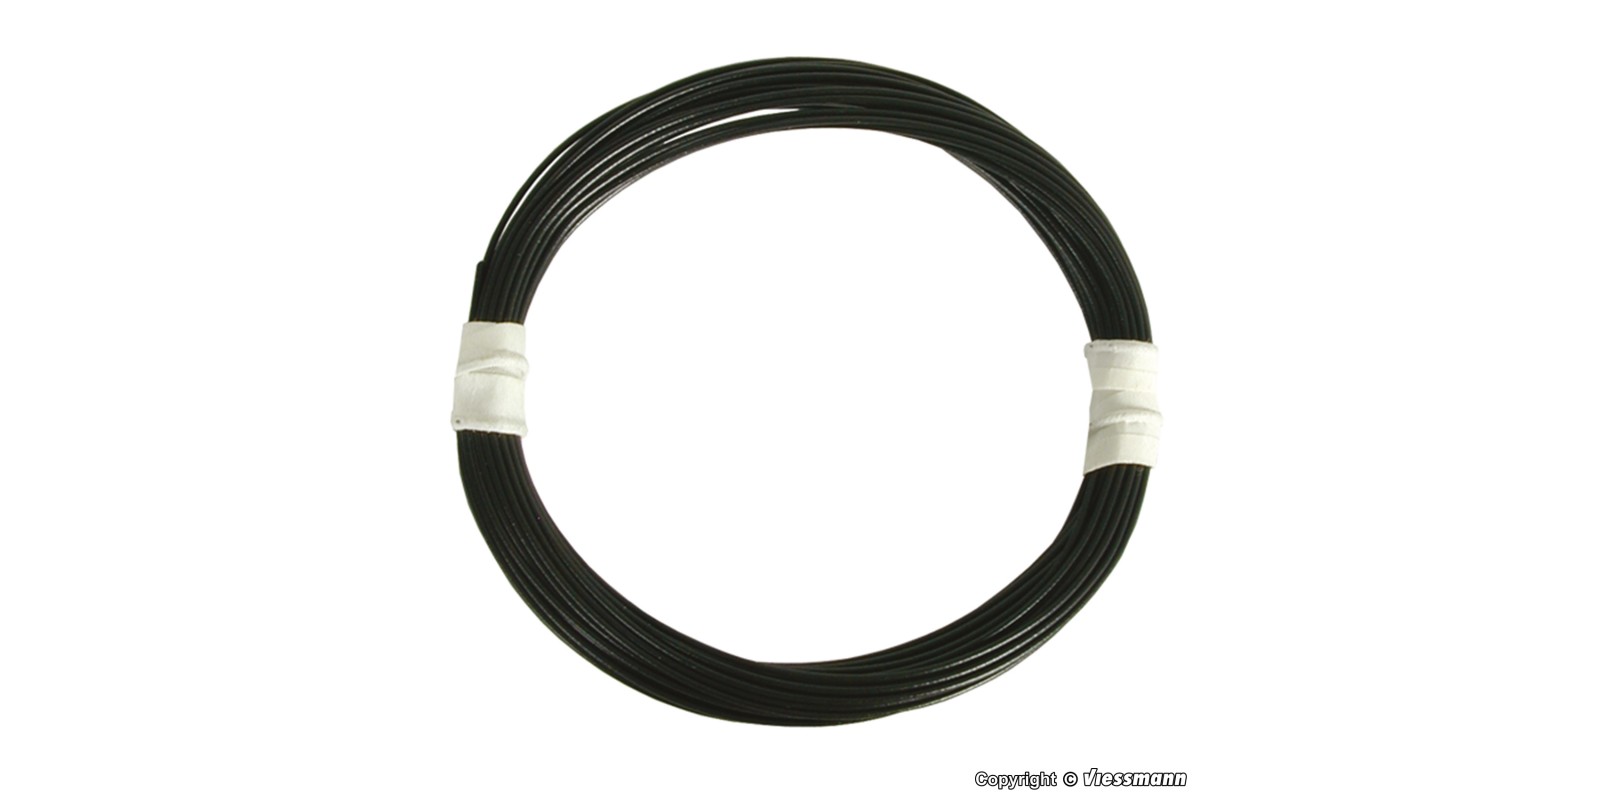 VI6890 Super thin special wire 0,03 mm², black, 5 m